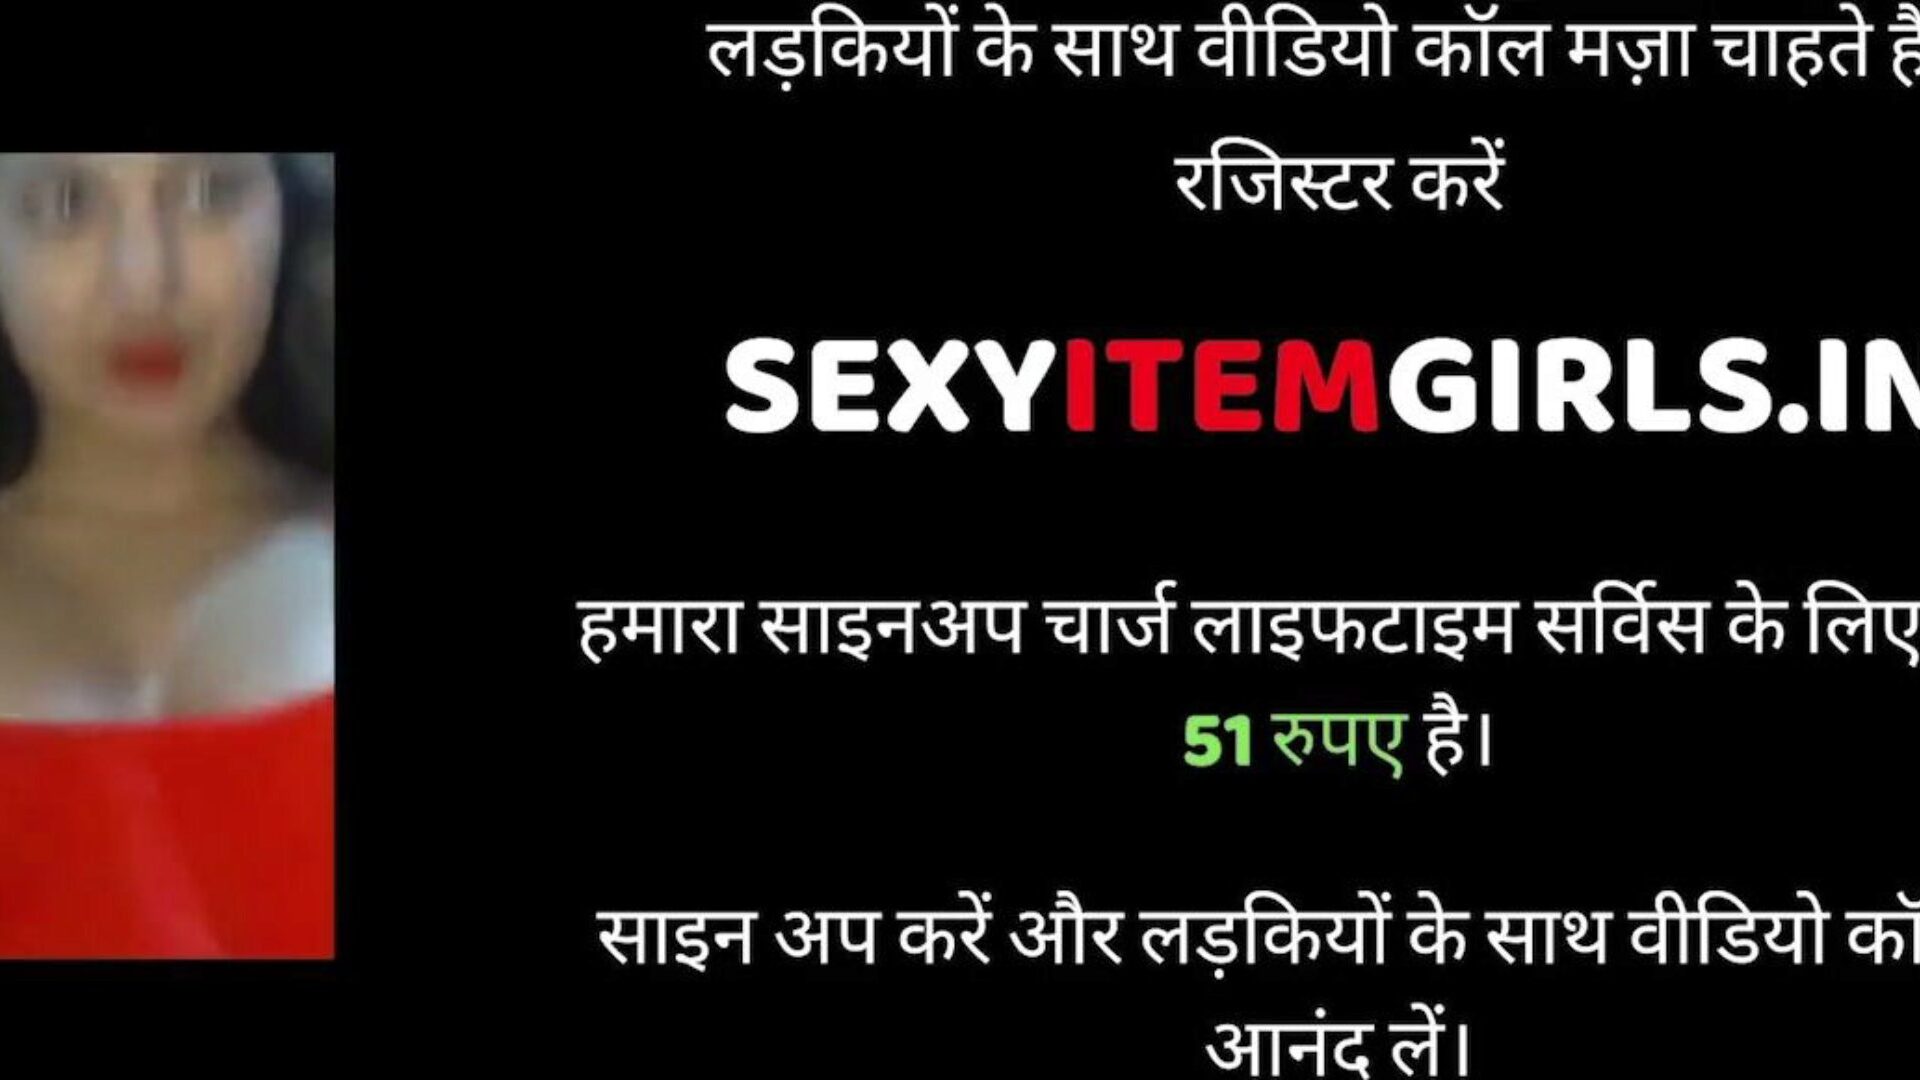 Ινδός σεξ και σύζυγος σεξ, δωρεάν σεξ xnxx πορνό 95: xhamster παρακολουθήστε ινδικό σύζυγο & γυναίκα σεξ βίντεο στο xhamster, ο πιο παχύς ιστότοπος με σωλήνες hd hump με τόνους δωρεάν σεξ xnxx hardcore & cum σε μουνί ταινίες πορνογραφίας